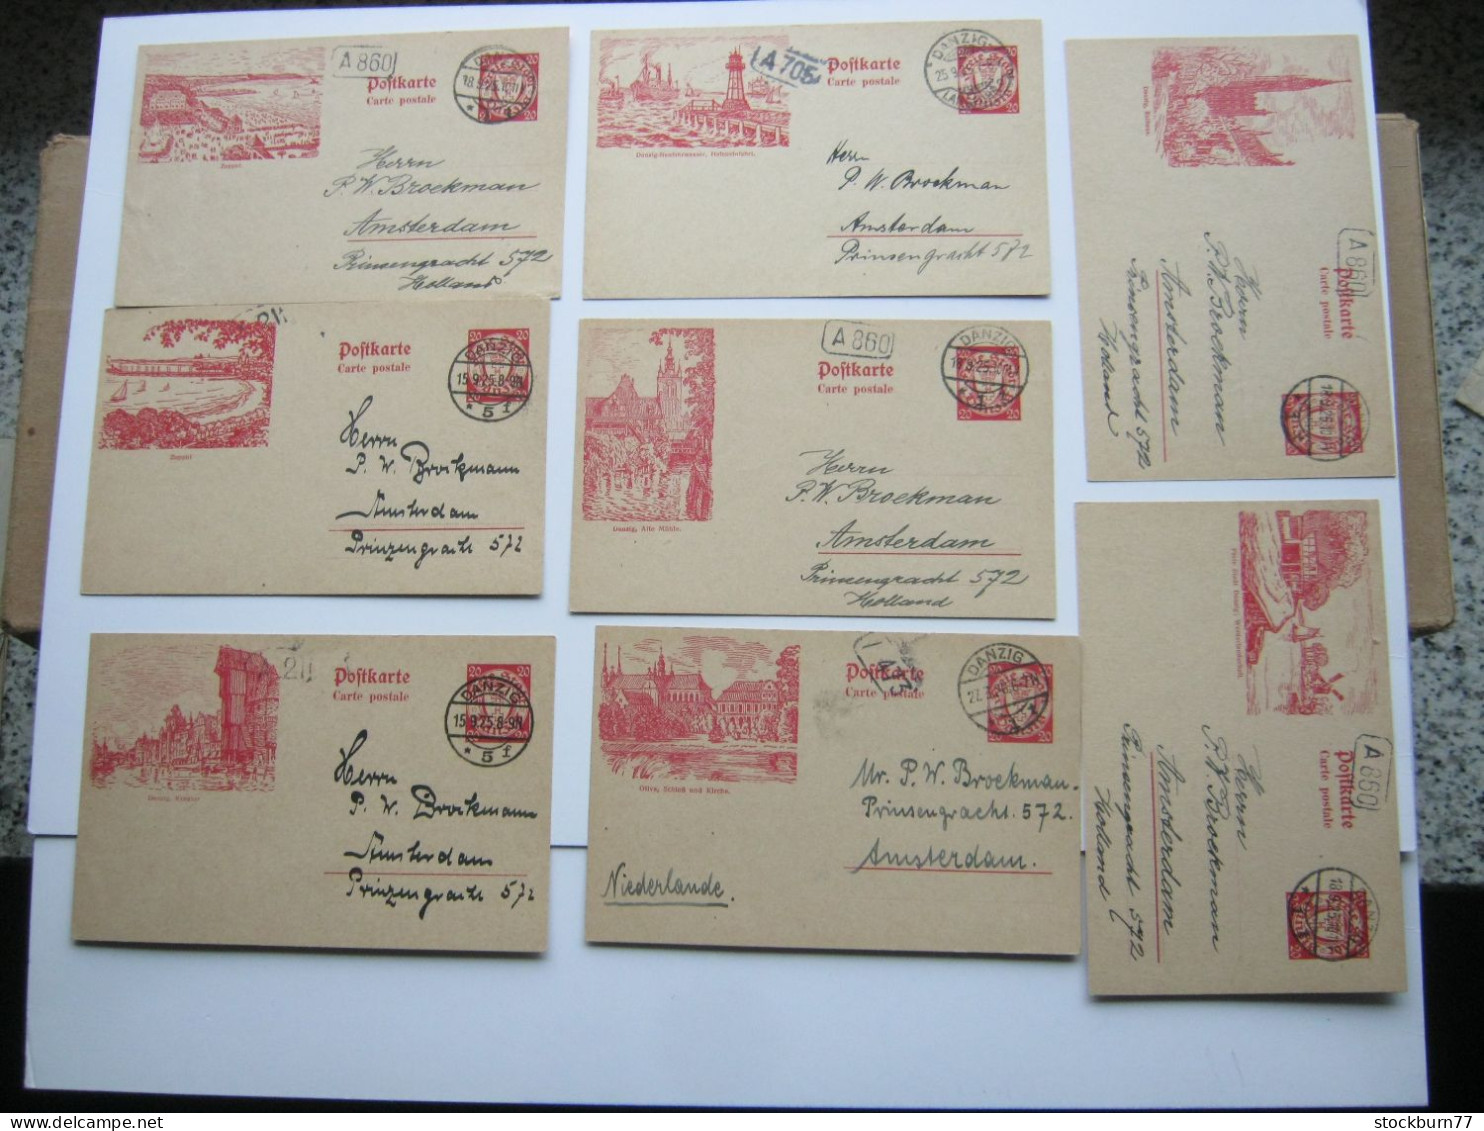 DANZIG ,    1925 , 20 Pfg. Bildganzsache , 8 Karten Ins Ausland Verschickt ( Niederlande), Sehr Selten ! - Enteros Postales